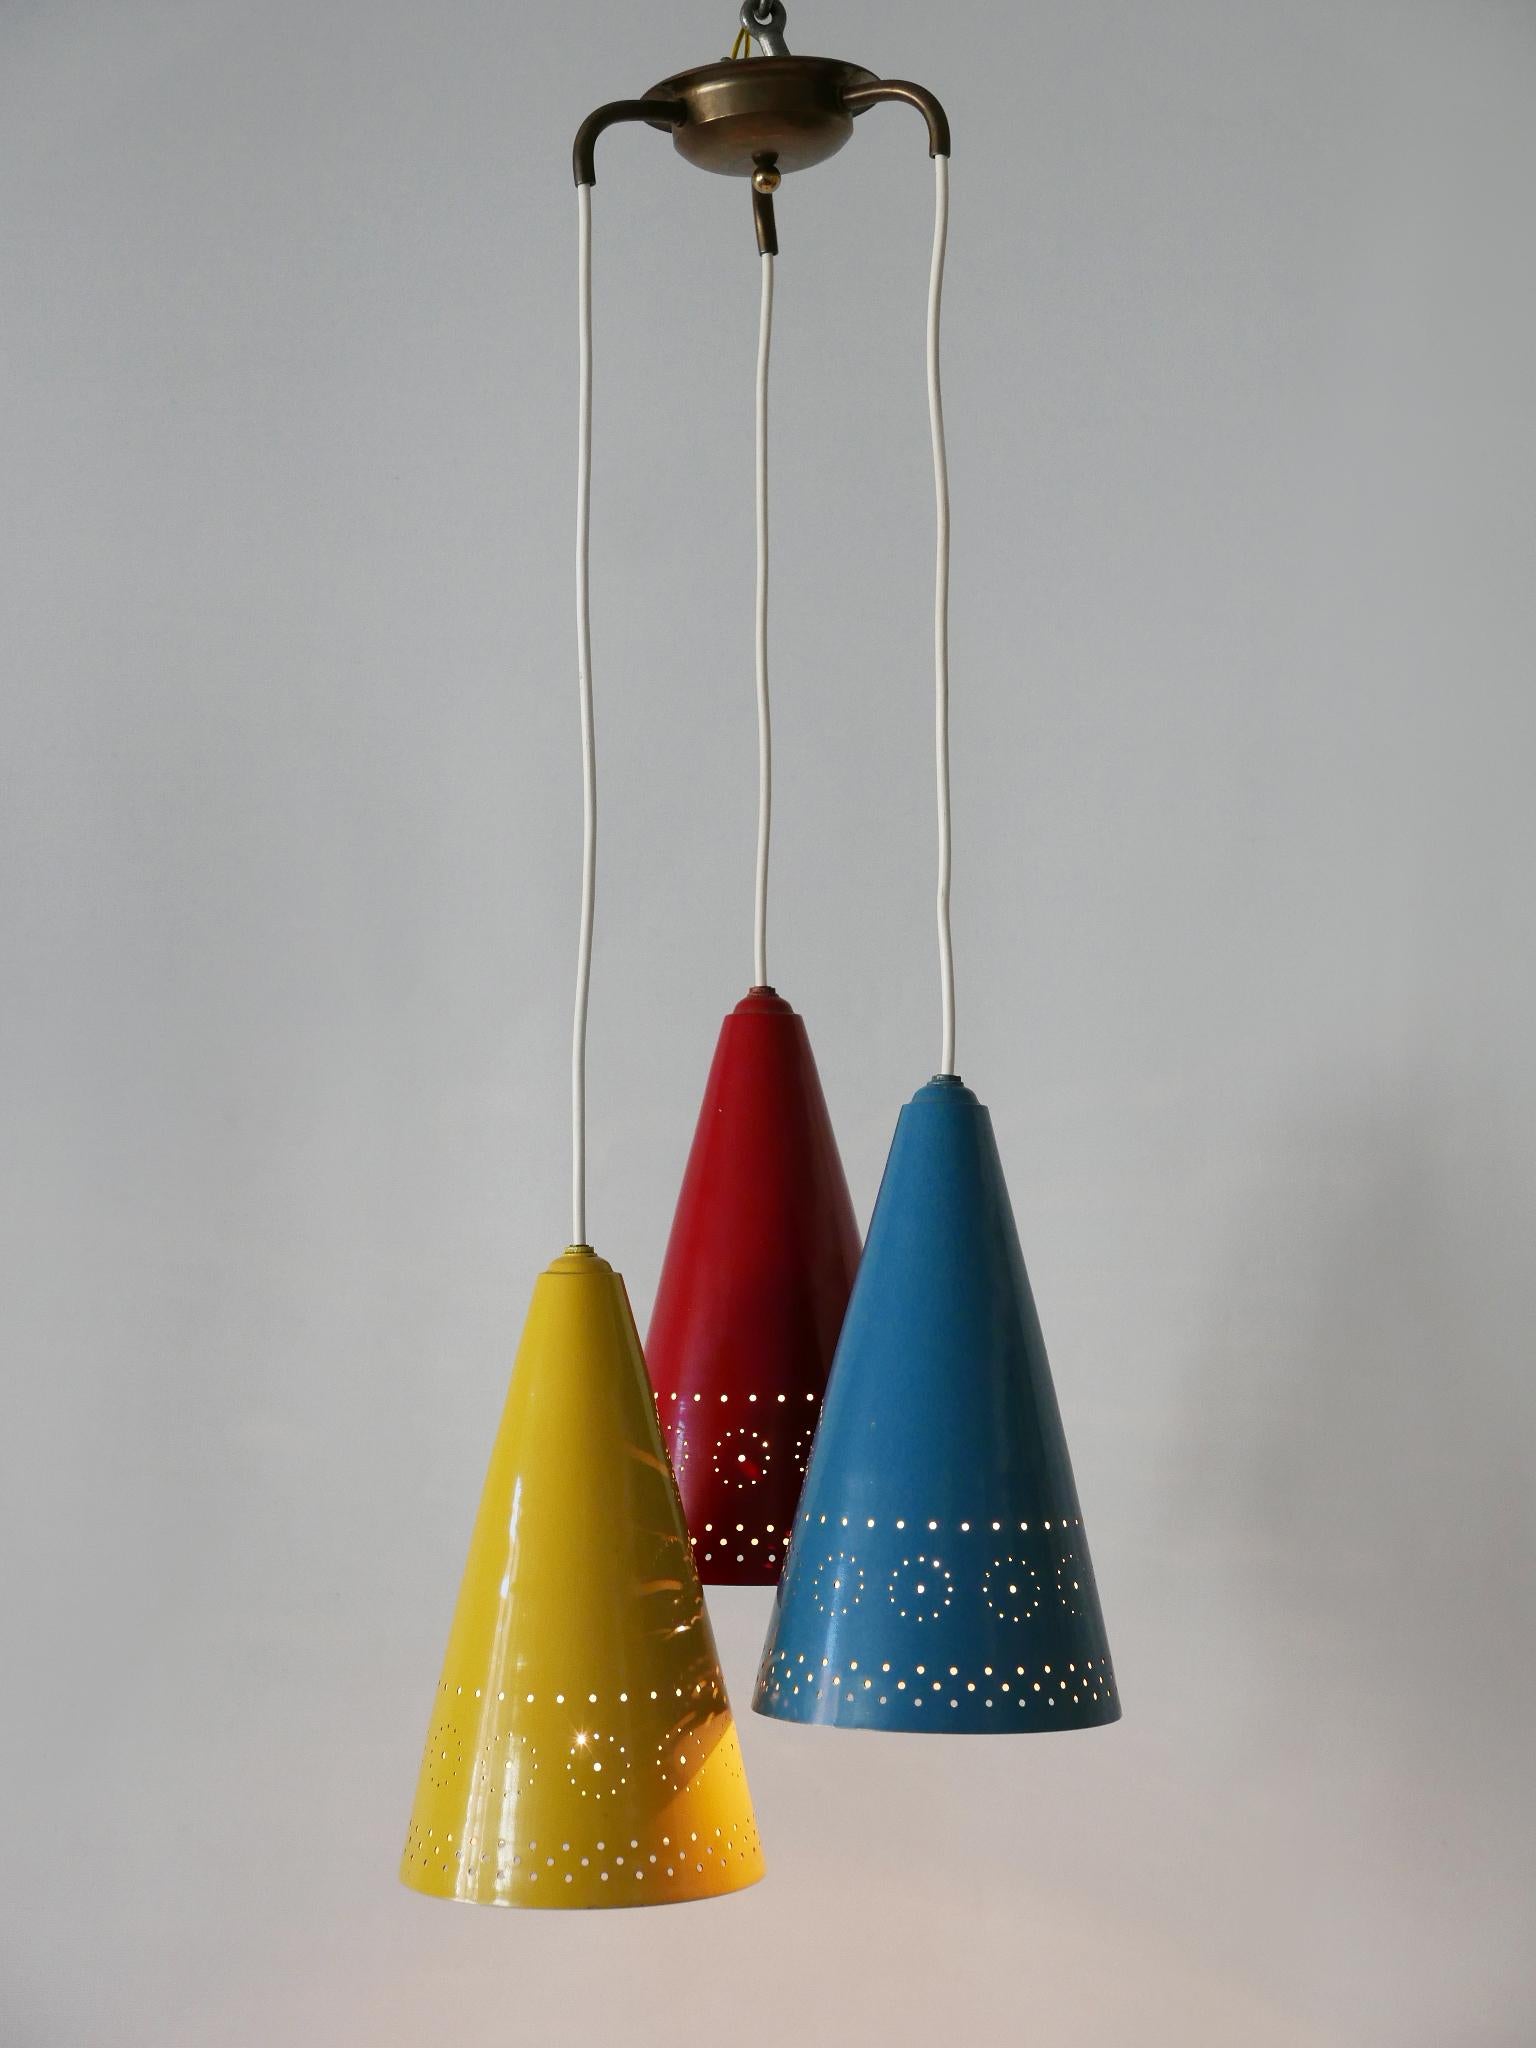 Exceptionnelle lampe suspendue ou lampe à suspendre très décorative de style Modern-Decor avec trois abat-jour. Conçue et fabriquée en Allemagne, dans les années 1960.

Réalisée en aluminium et en laiton émaillé et perforé bleu, rouge et jaune, la